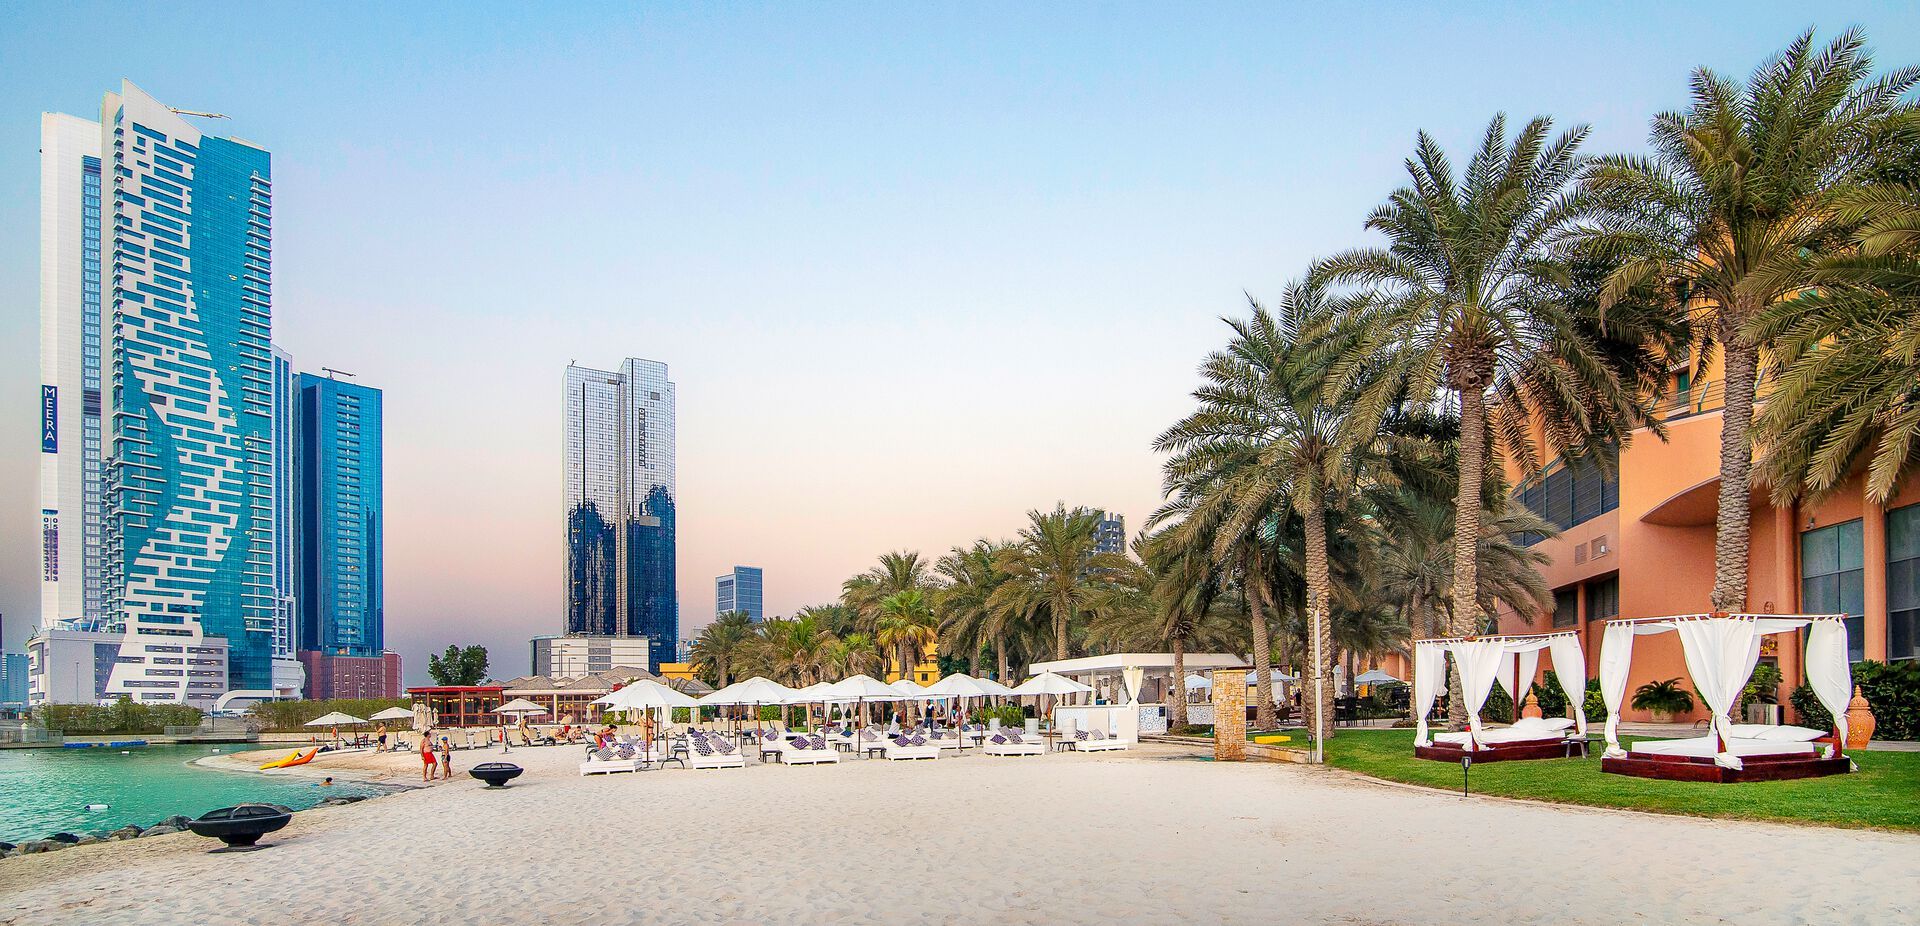 Emirats Arabes Unis - Abu Dhabi - Hôtel Sheraton Abu Dhabi Hotel & Resort 5*